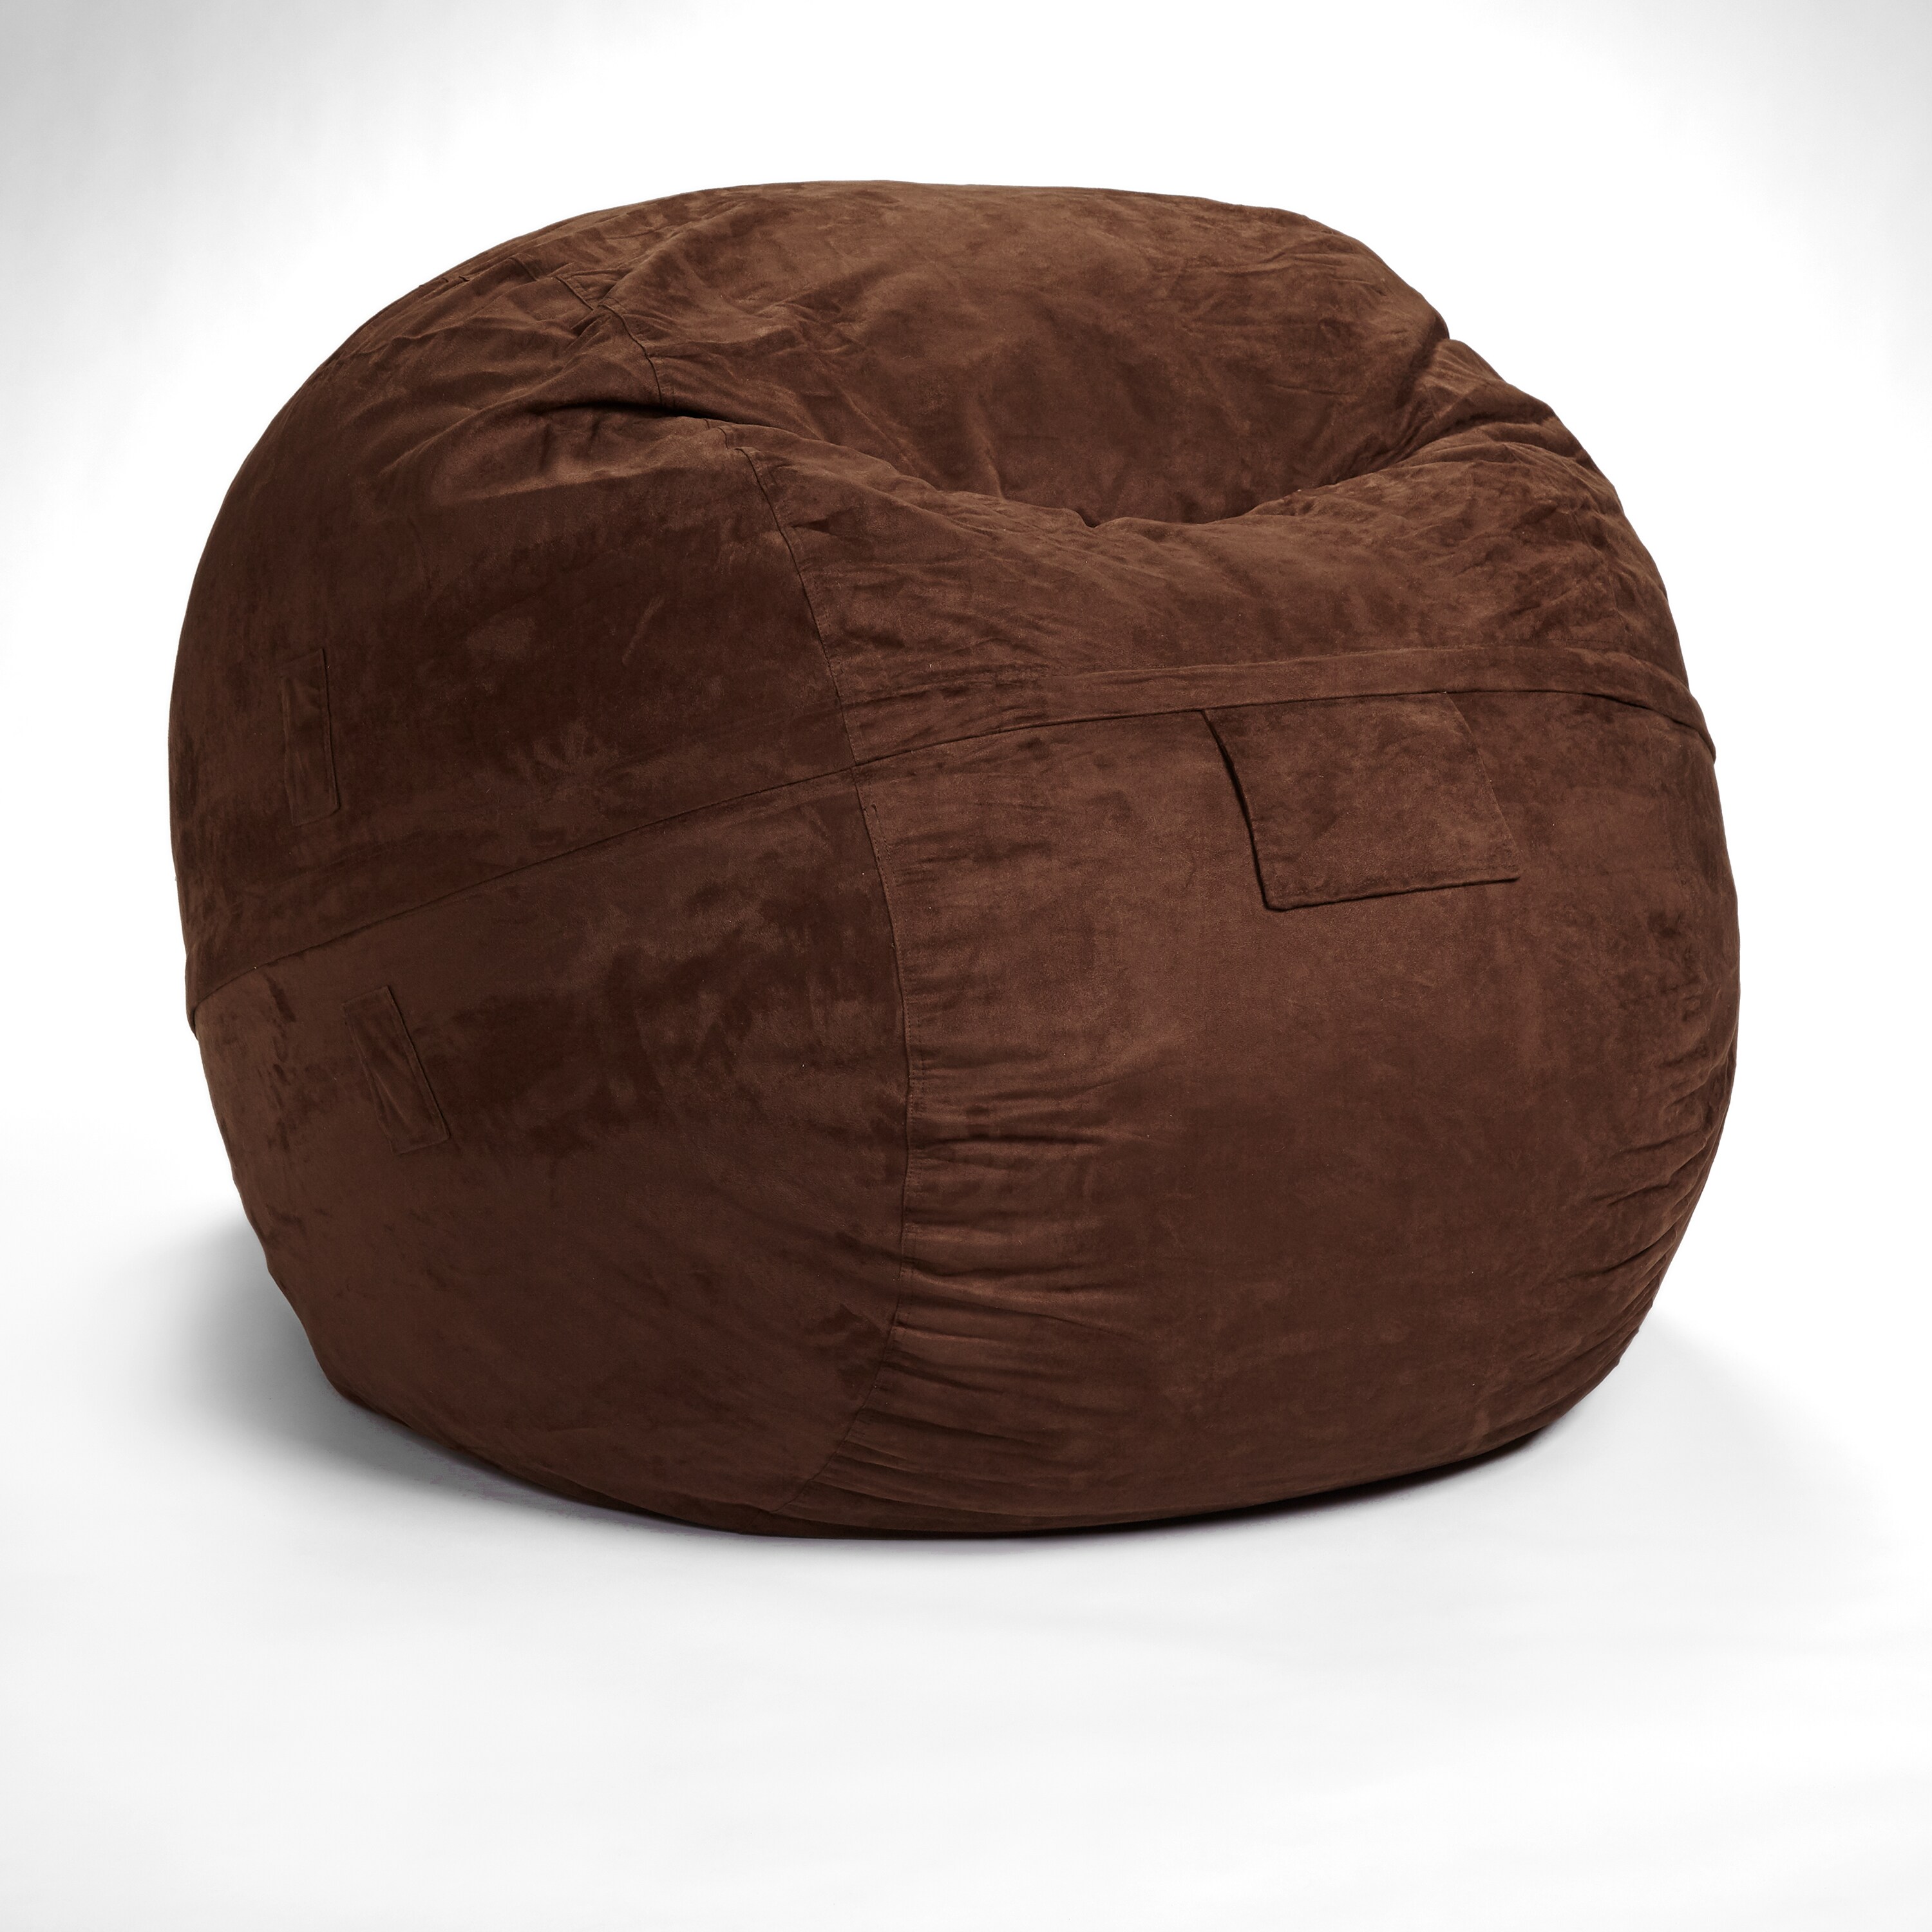 Bean Bag Chairs, Modern Soft Tufted Foam Bean Bag Chair Filler